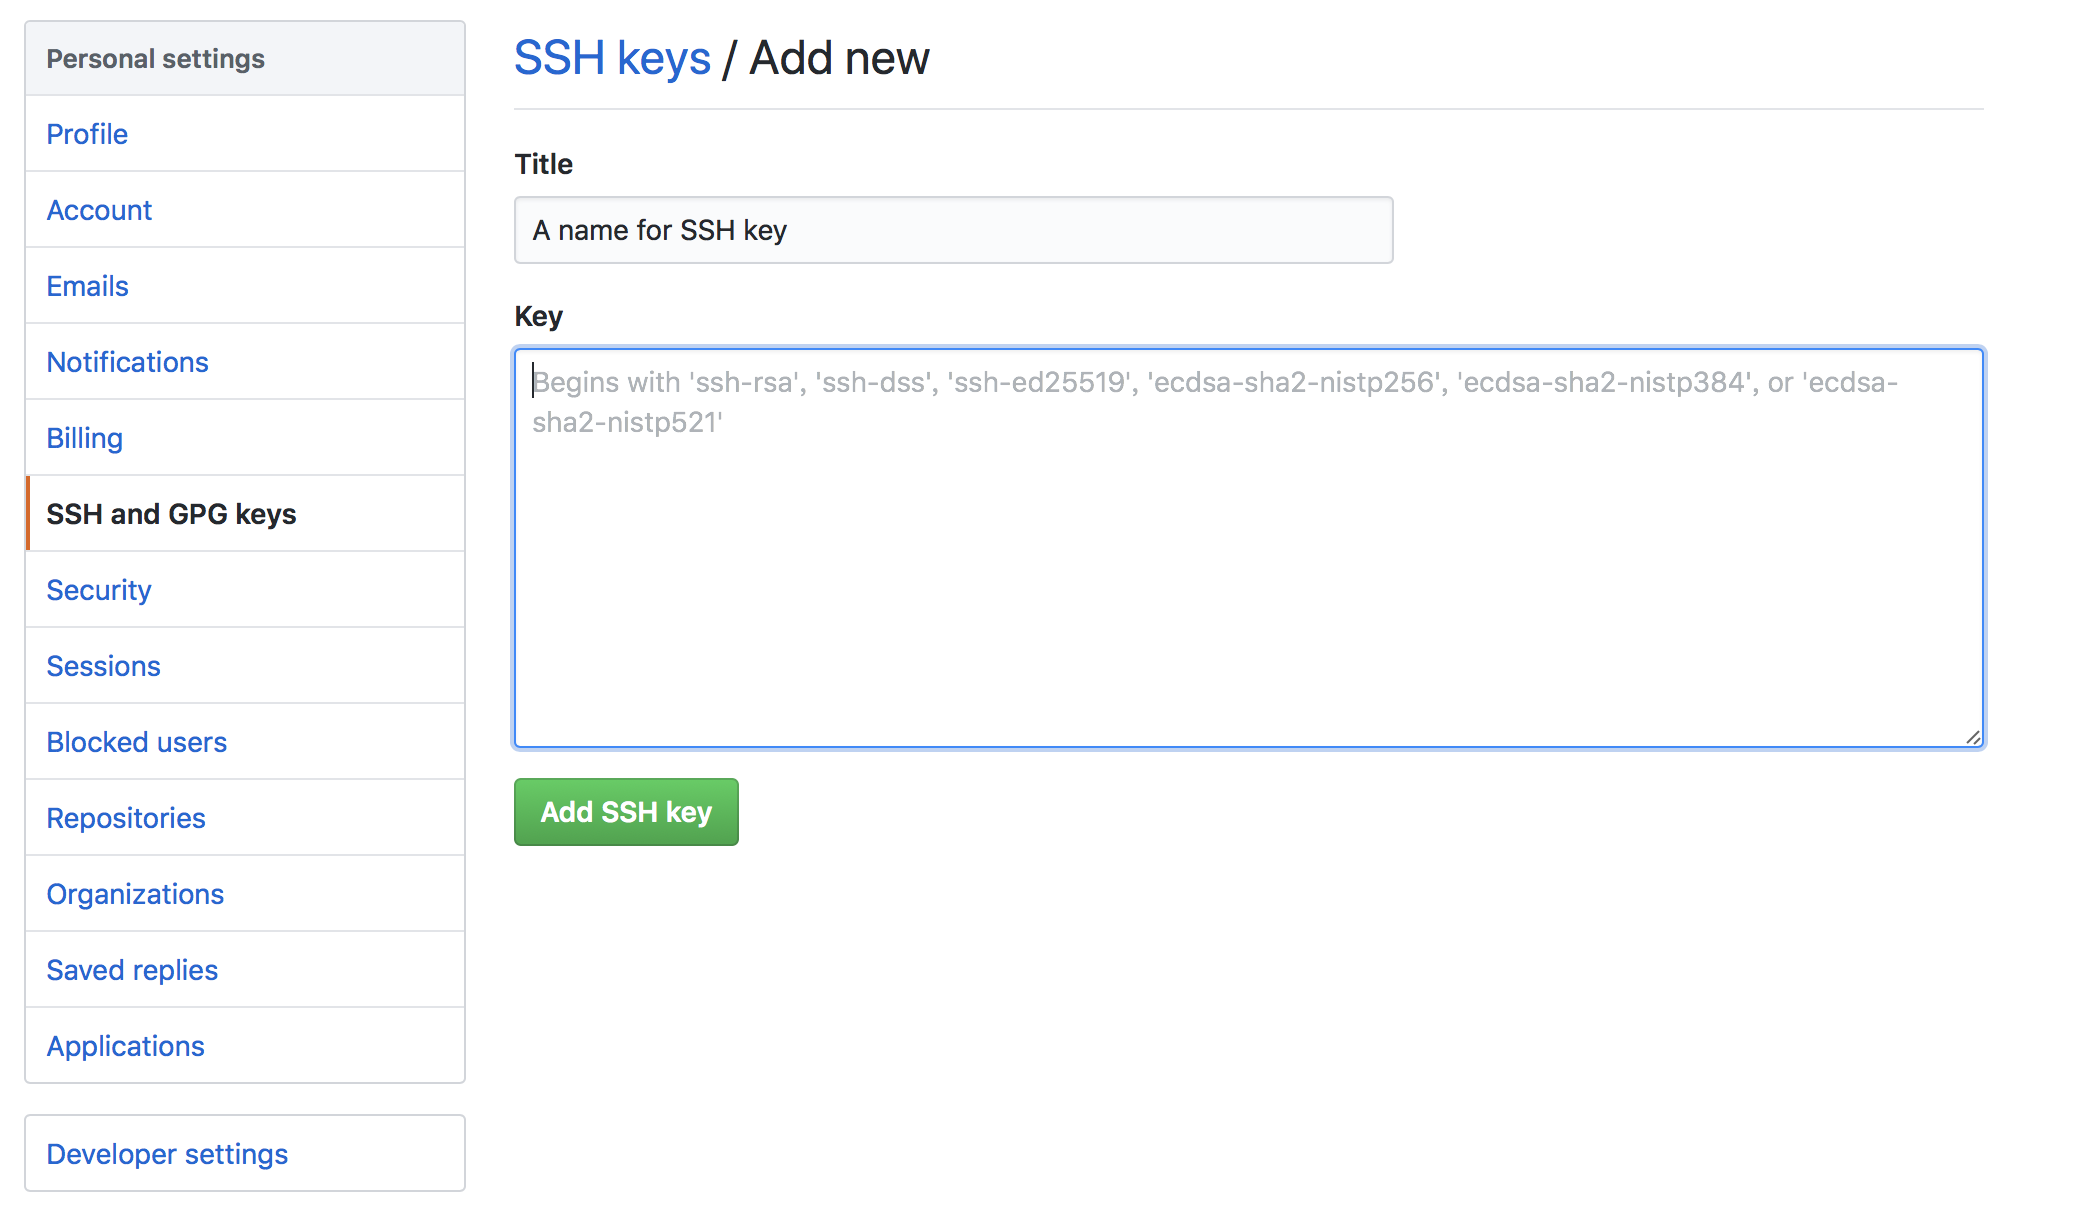 Add SSH key